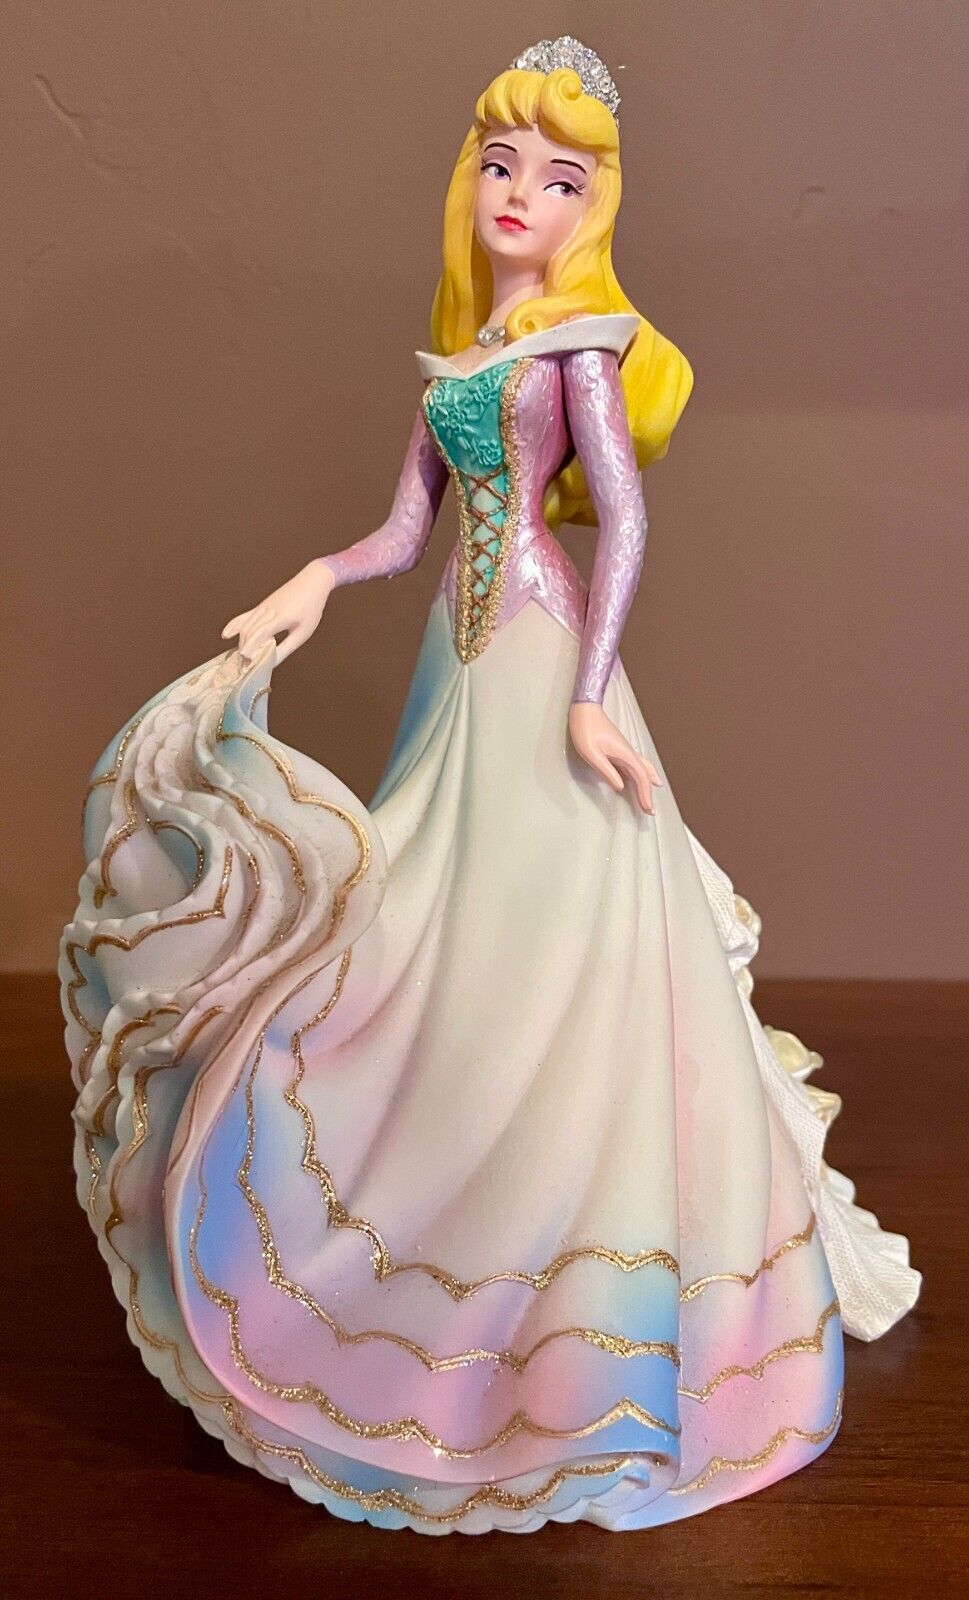 Disney Showcase Aurora Figurine Couture de Force Enesco 4031543